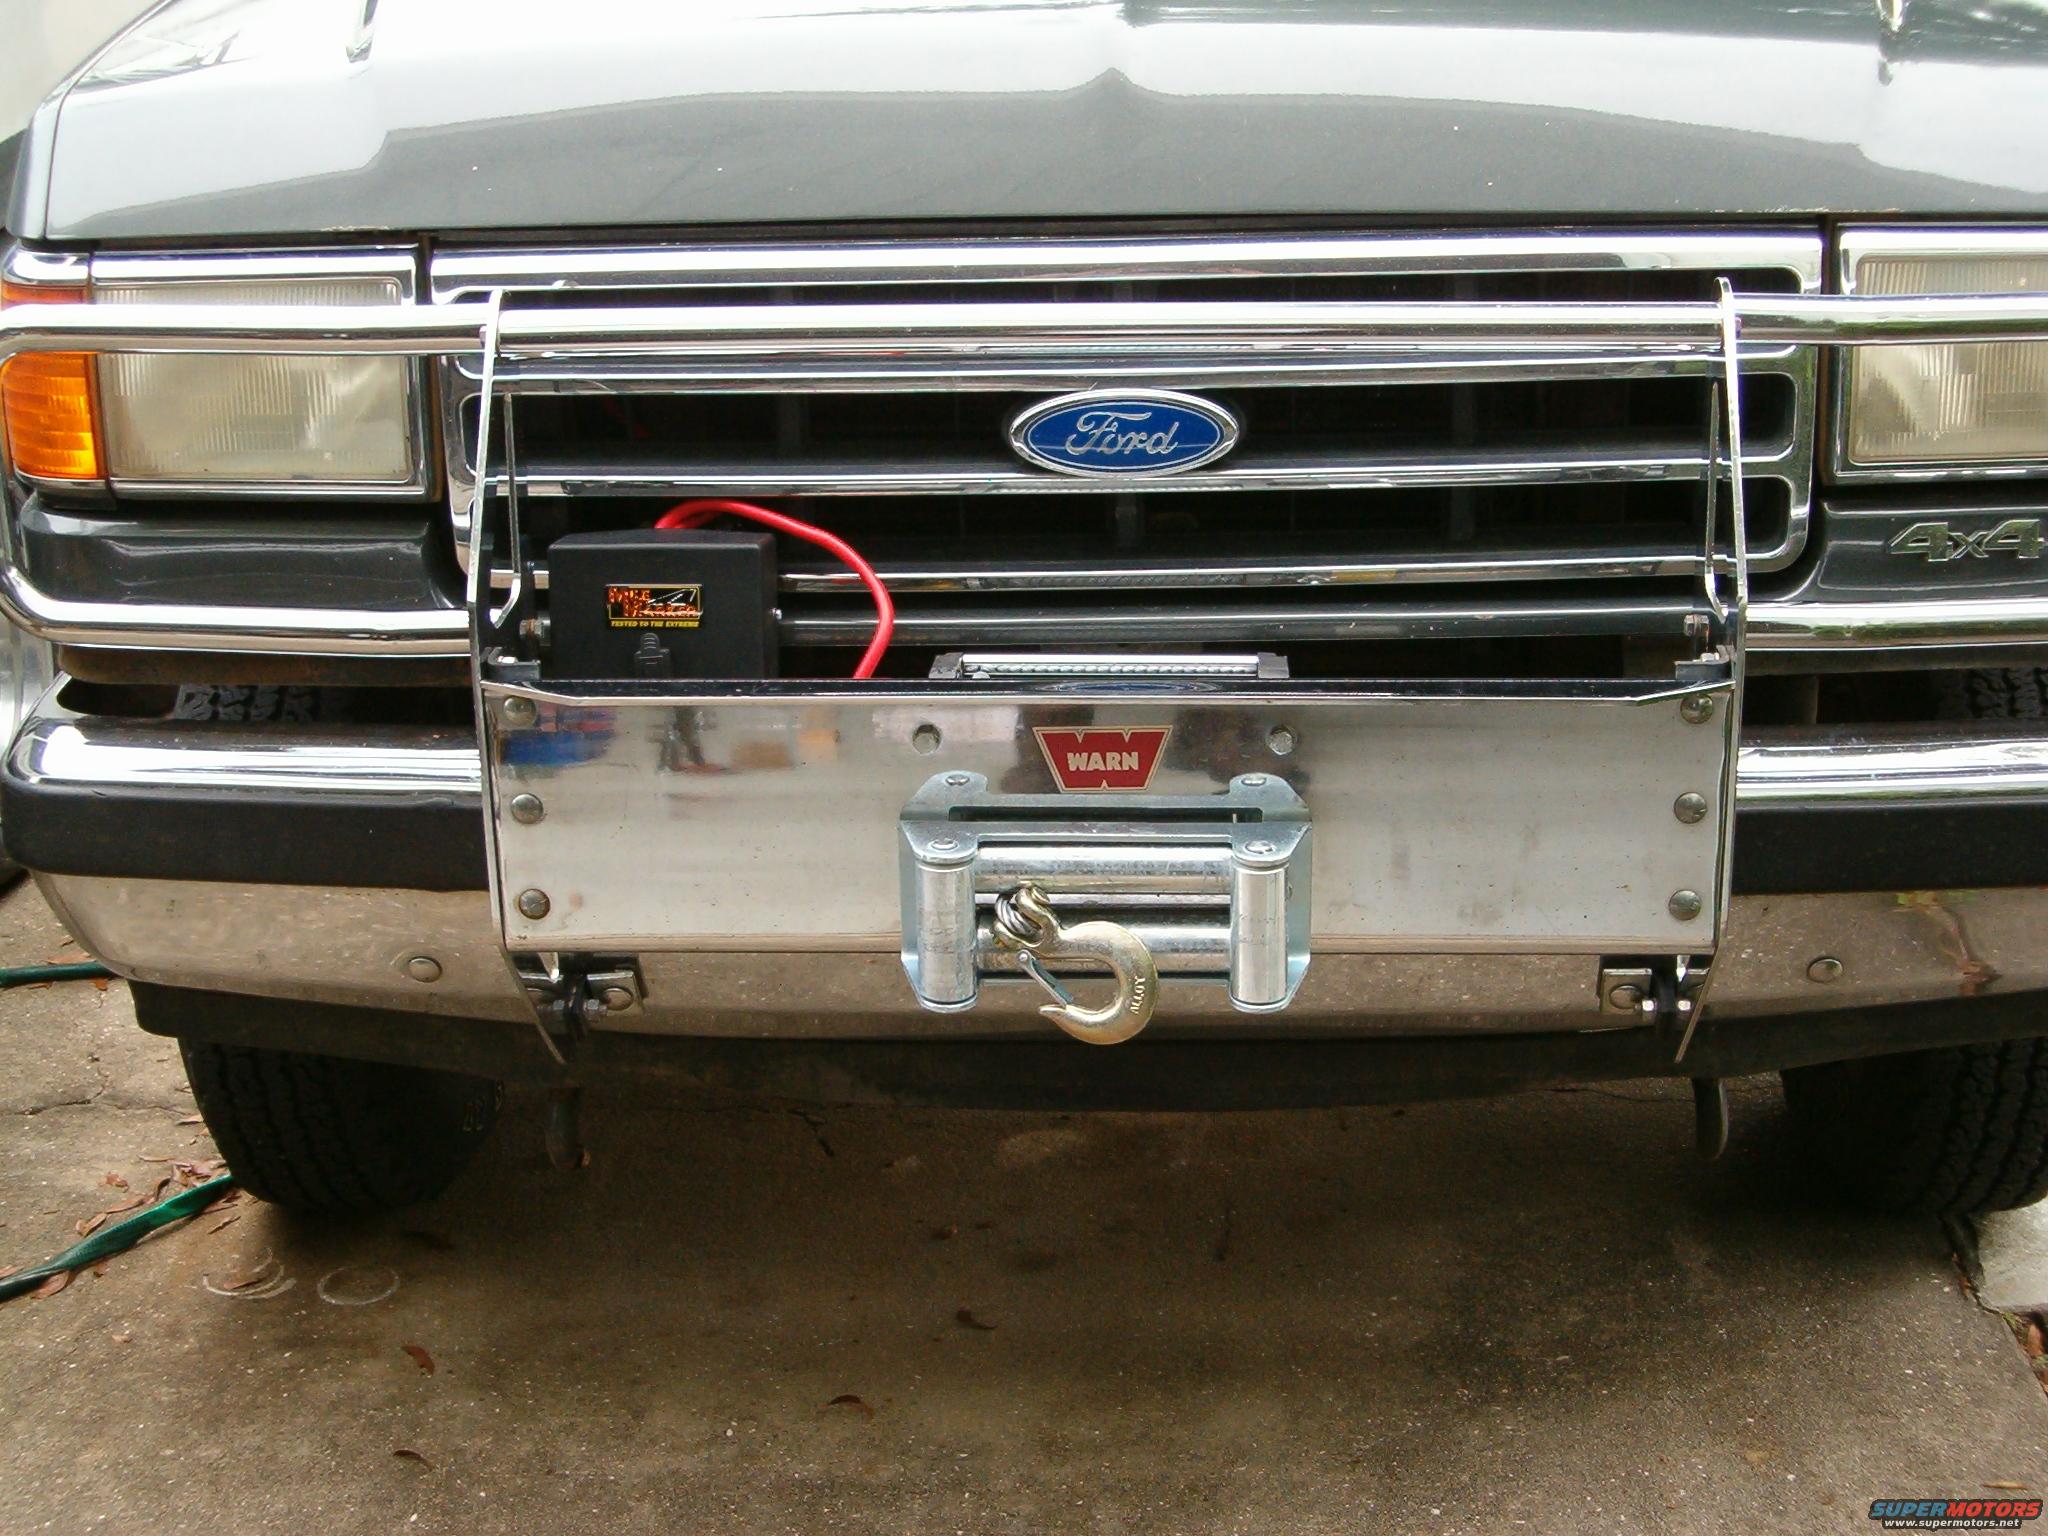 1995 Ford bronco winch bumper #9